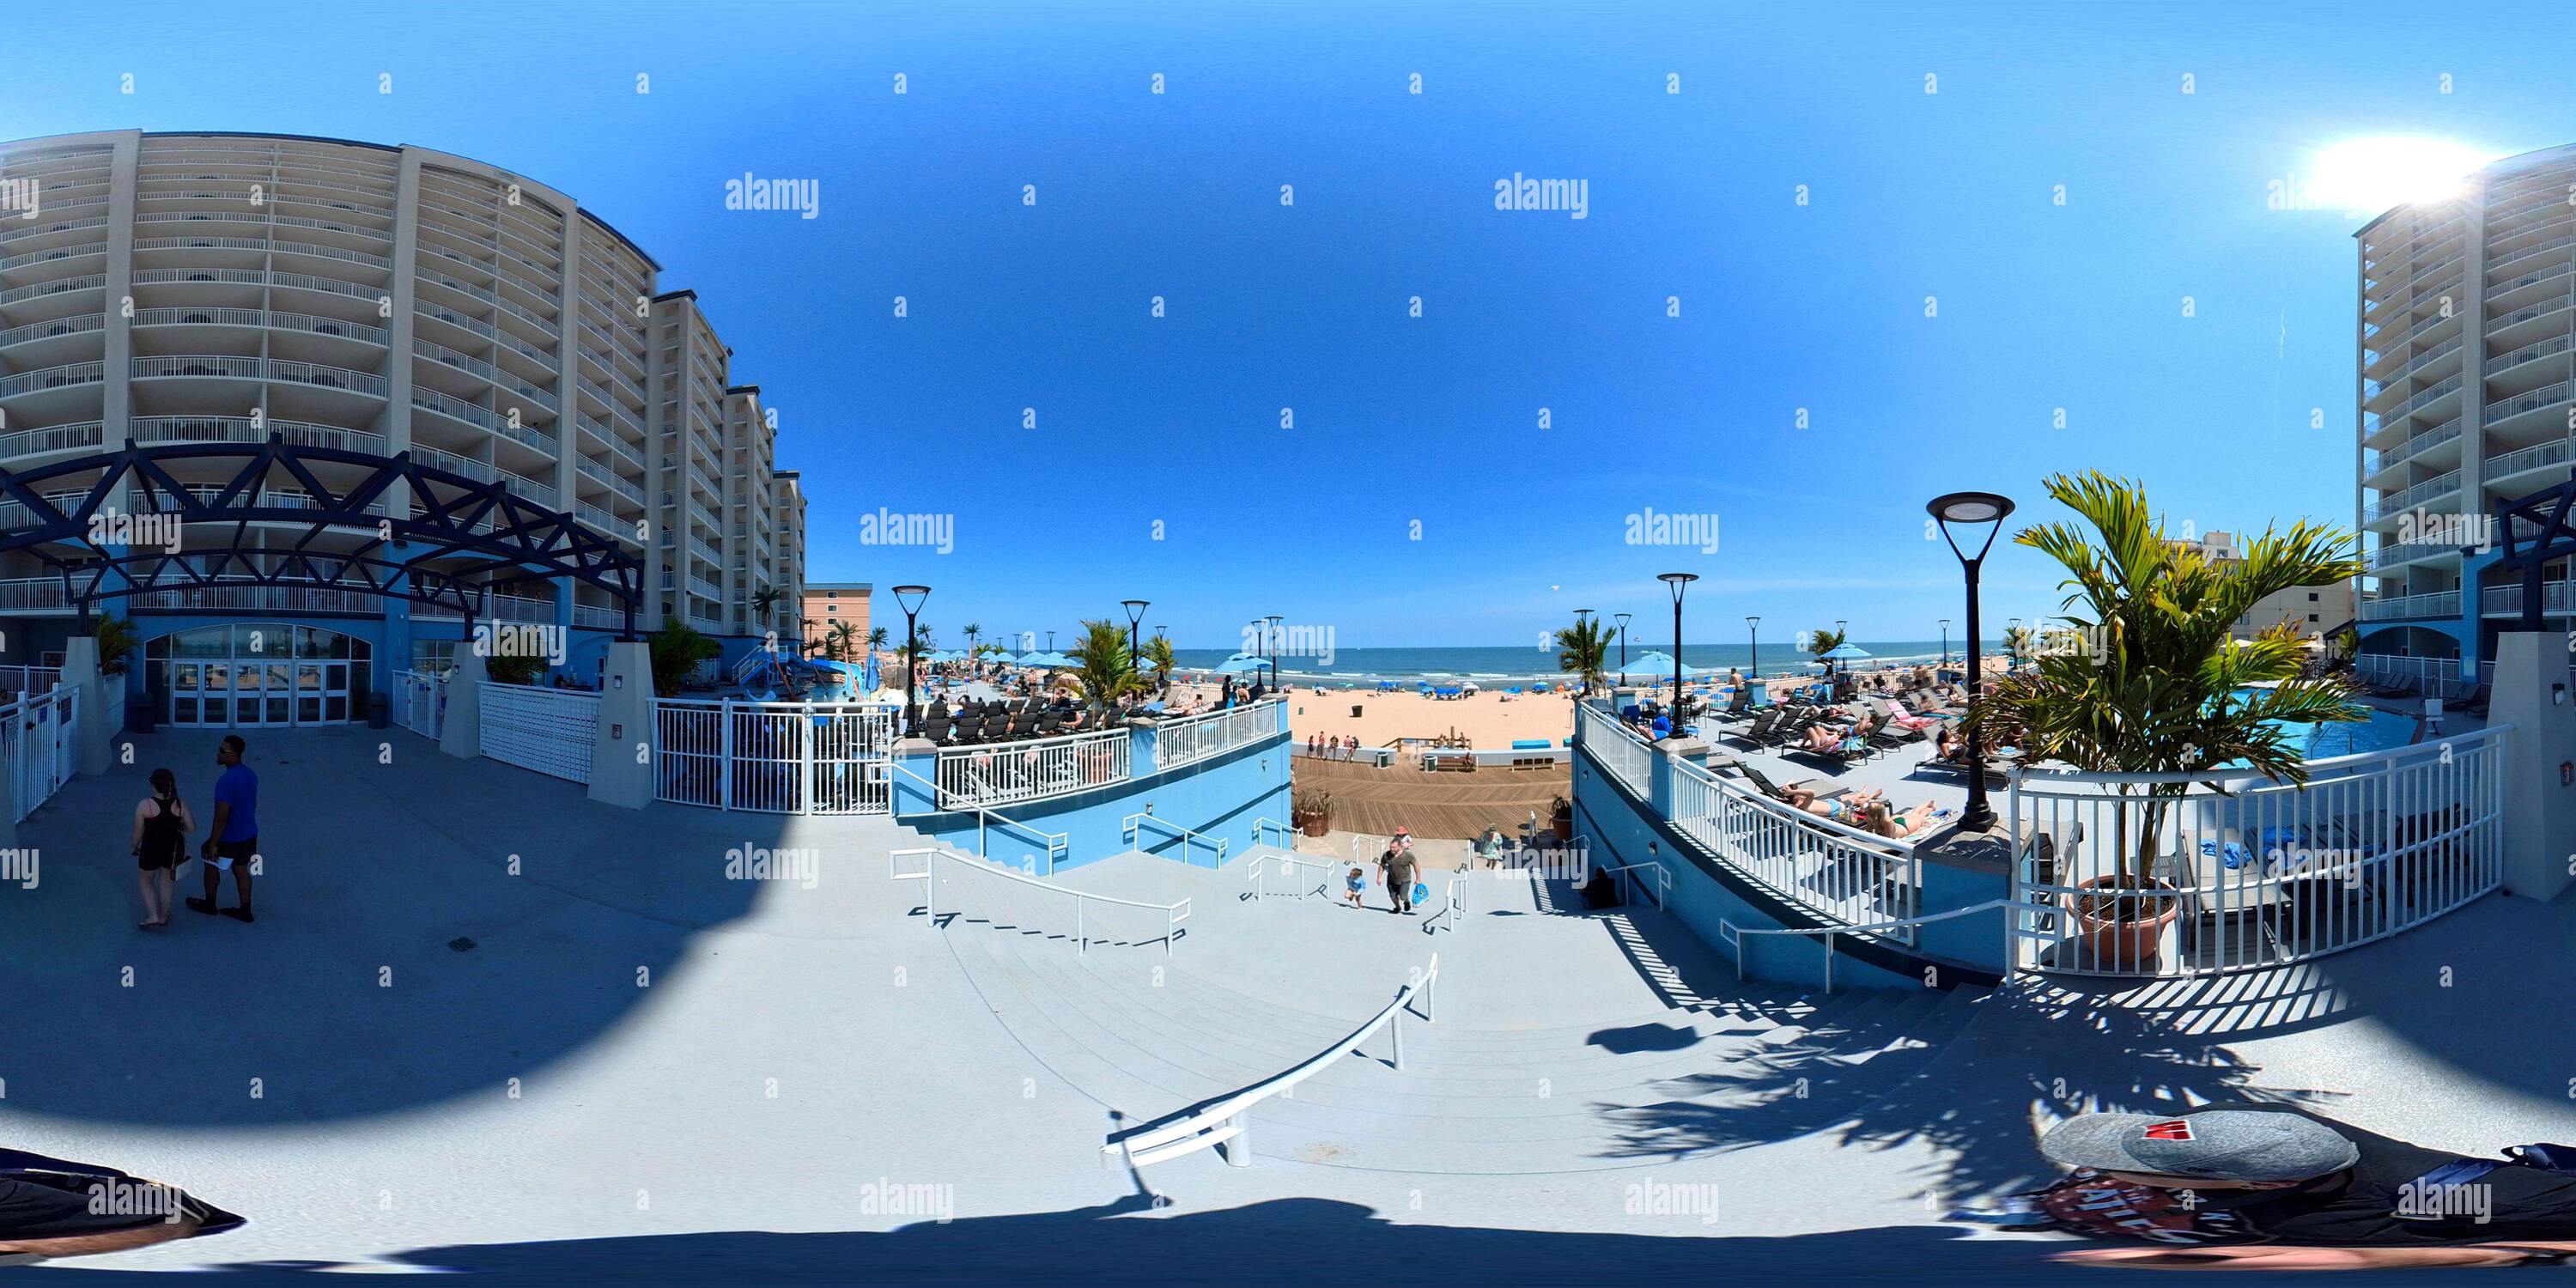 Visualizzazione panoramica a 360 gradi di Di fronte all'Holiday Inn sul lungomare di Ocean City, Maryland - 17th Street